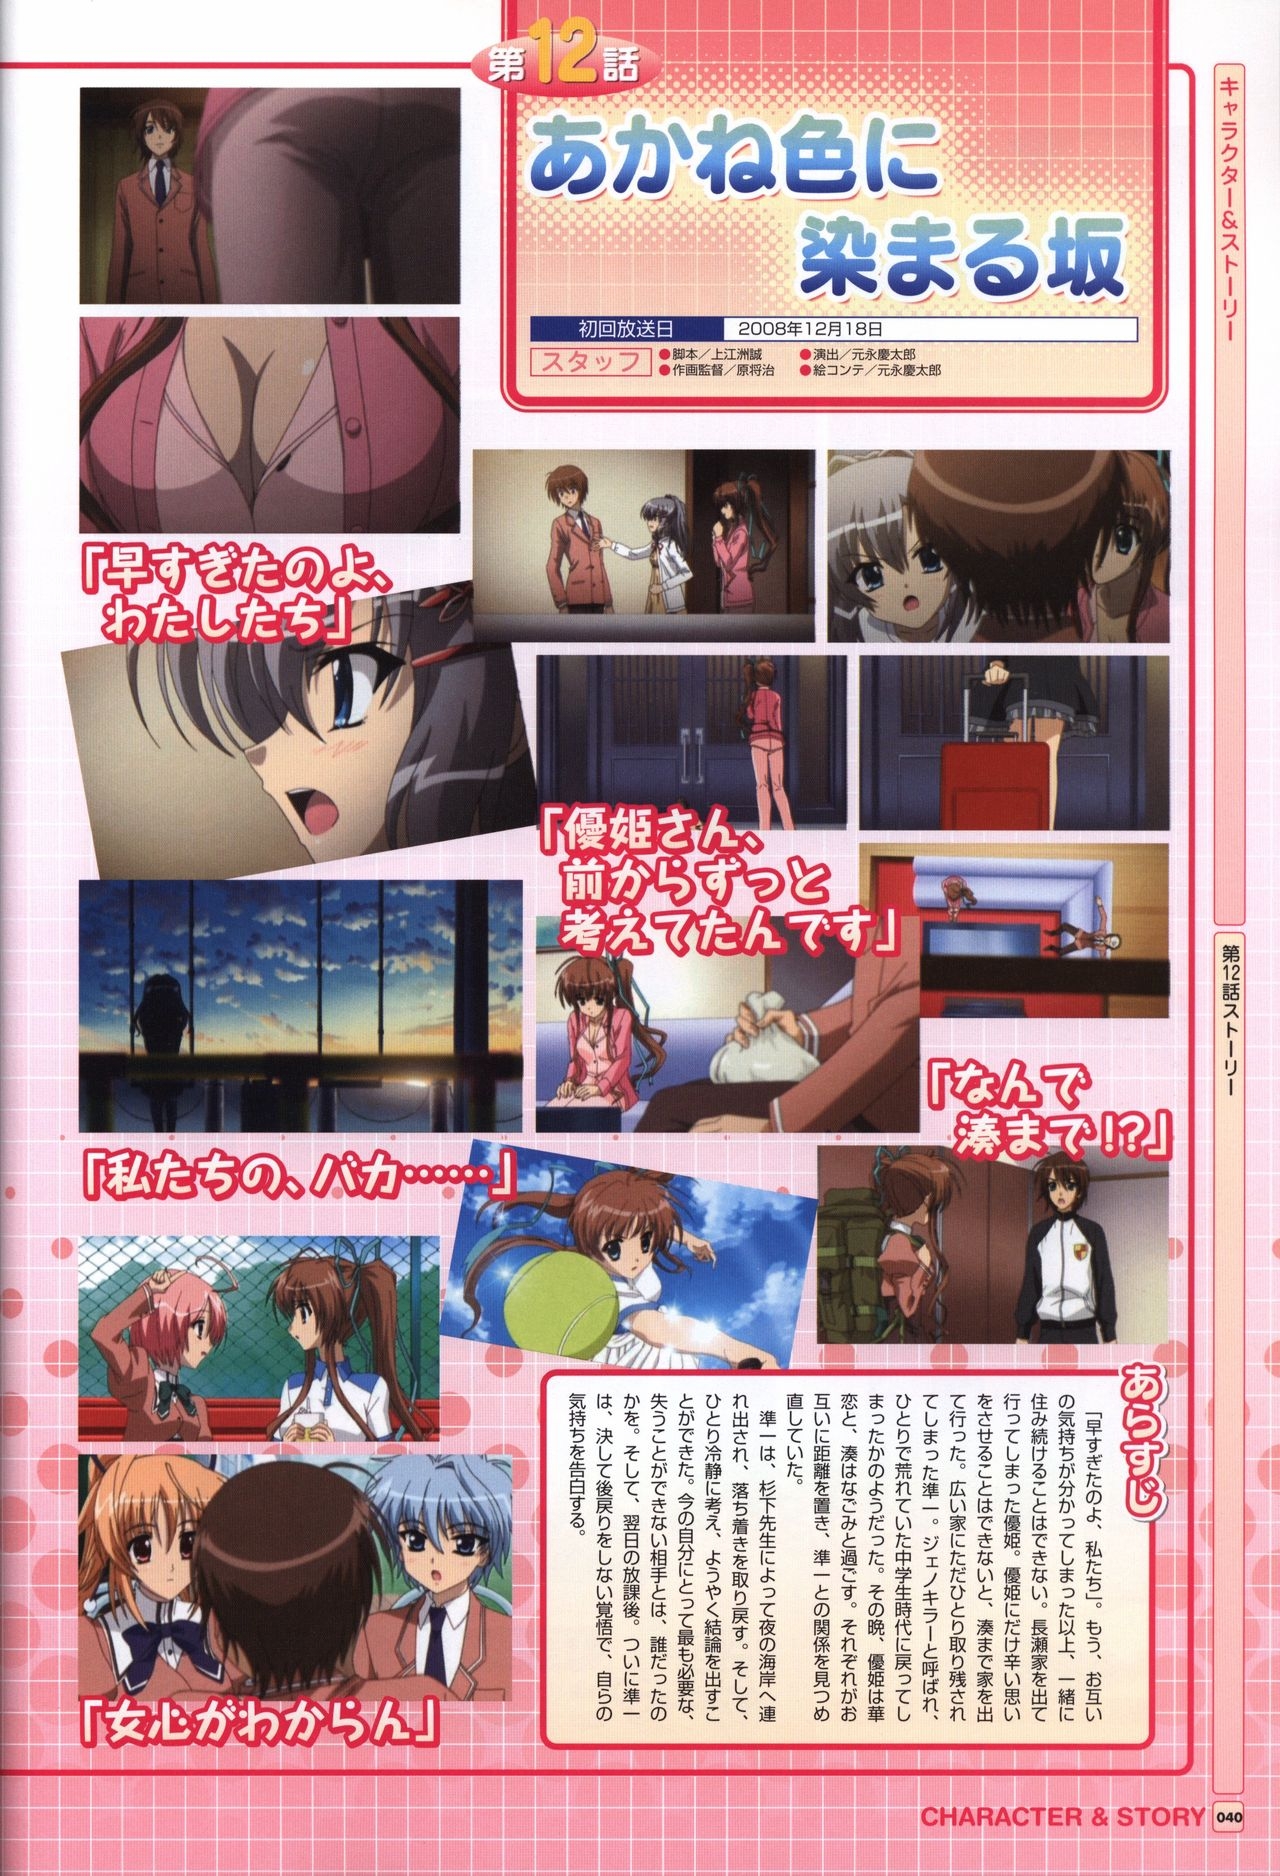 TV ANIME Akaneiro ni Somaru Saka Visual Guide Book 40